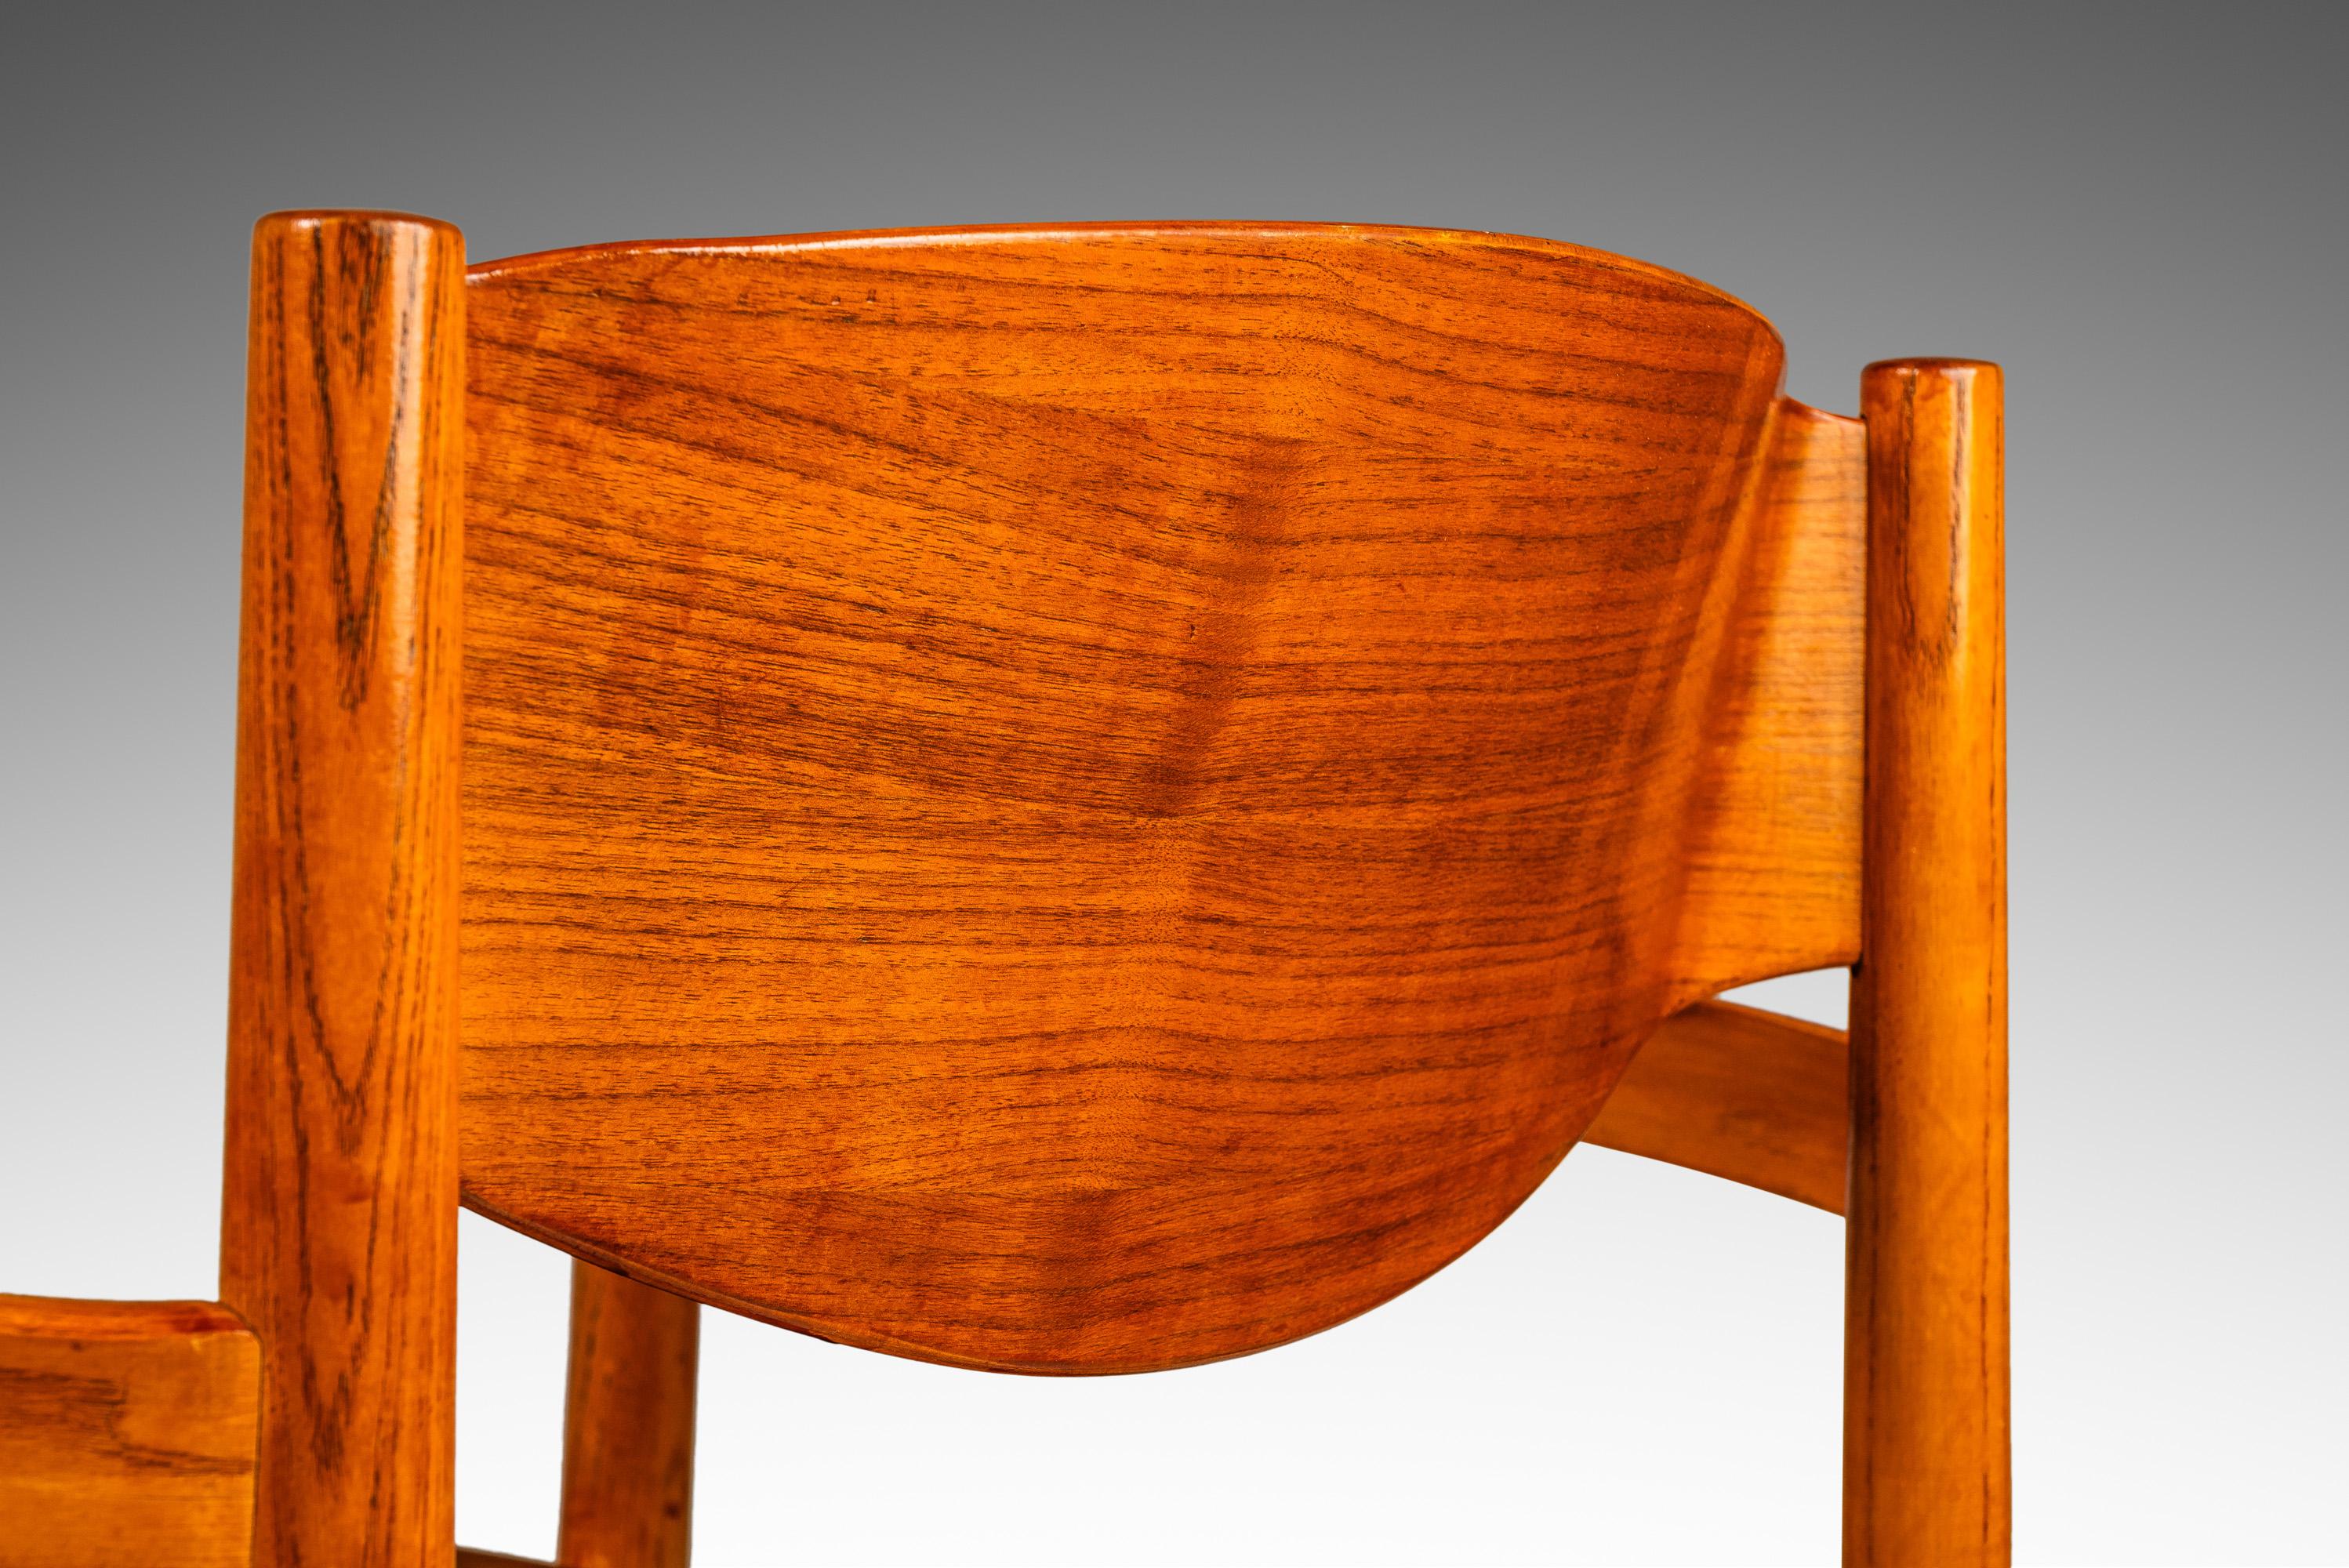 Single Mid-Century Modern Chair in Oak & Walnut  by Jens Risom, USA, c. 1960s For Sale 3